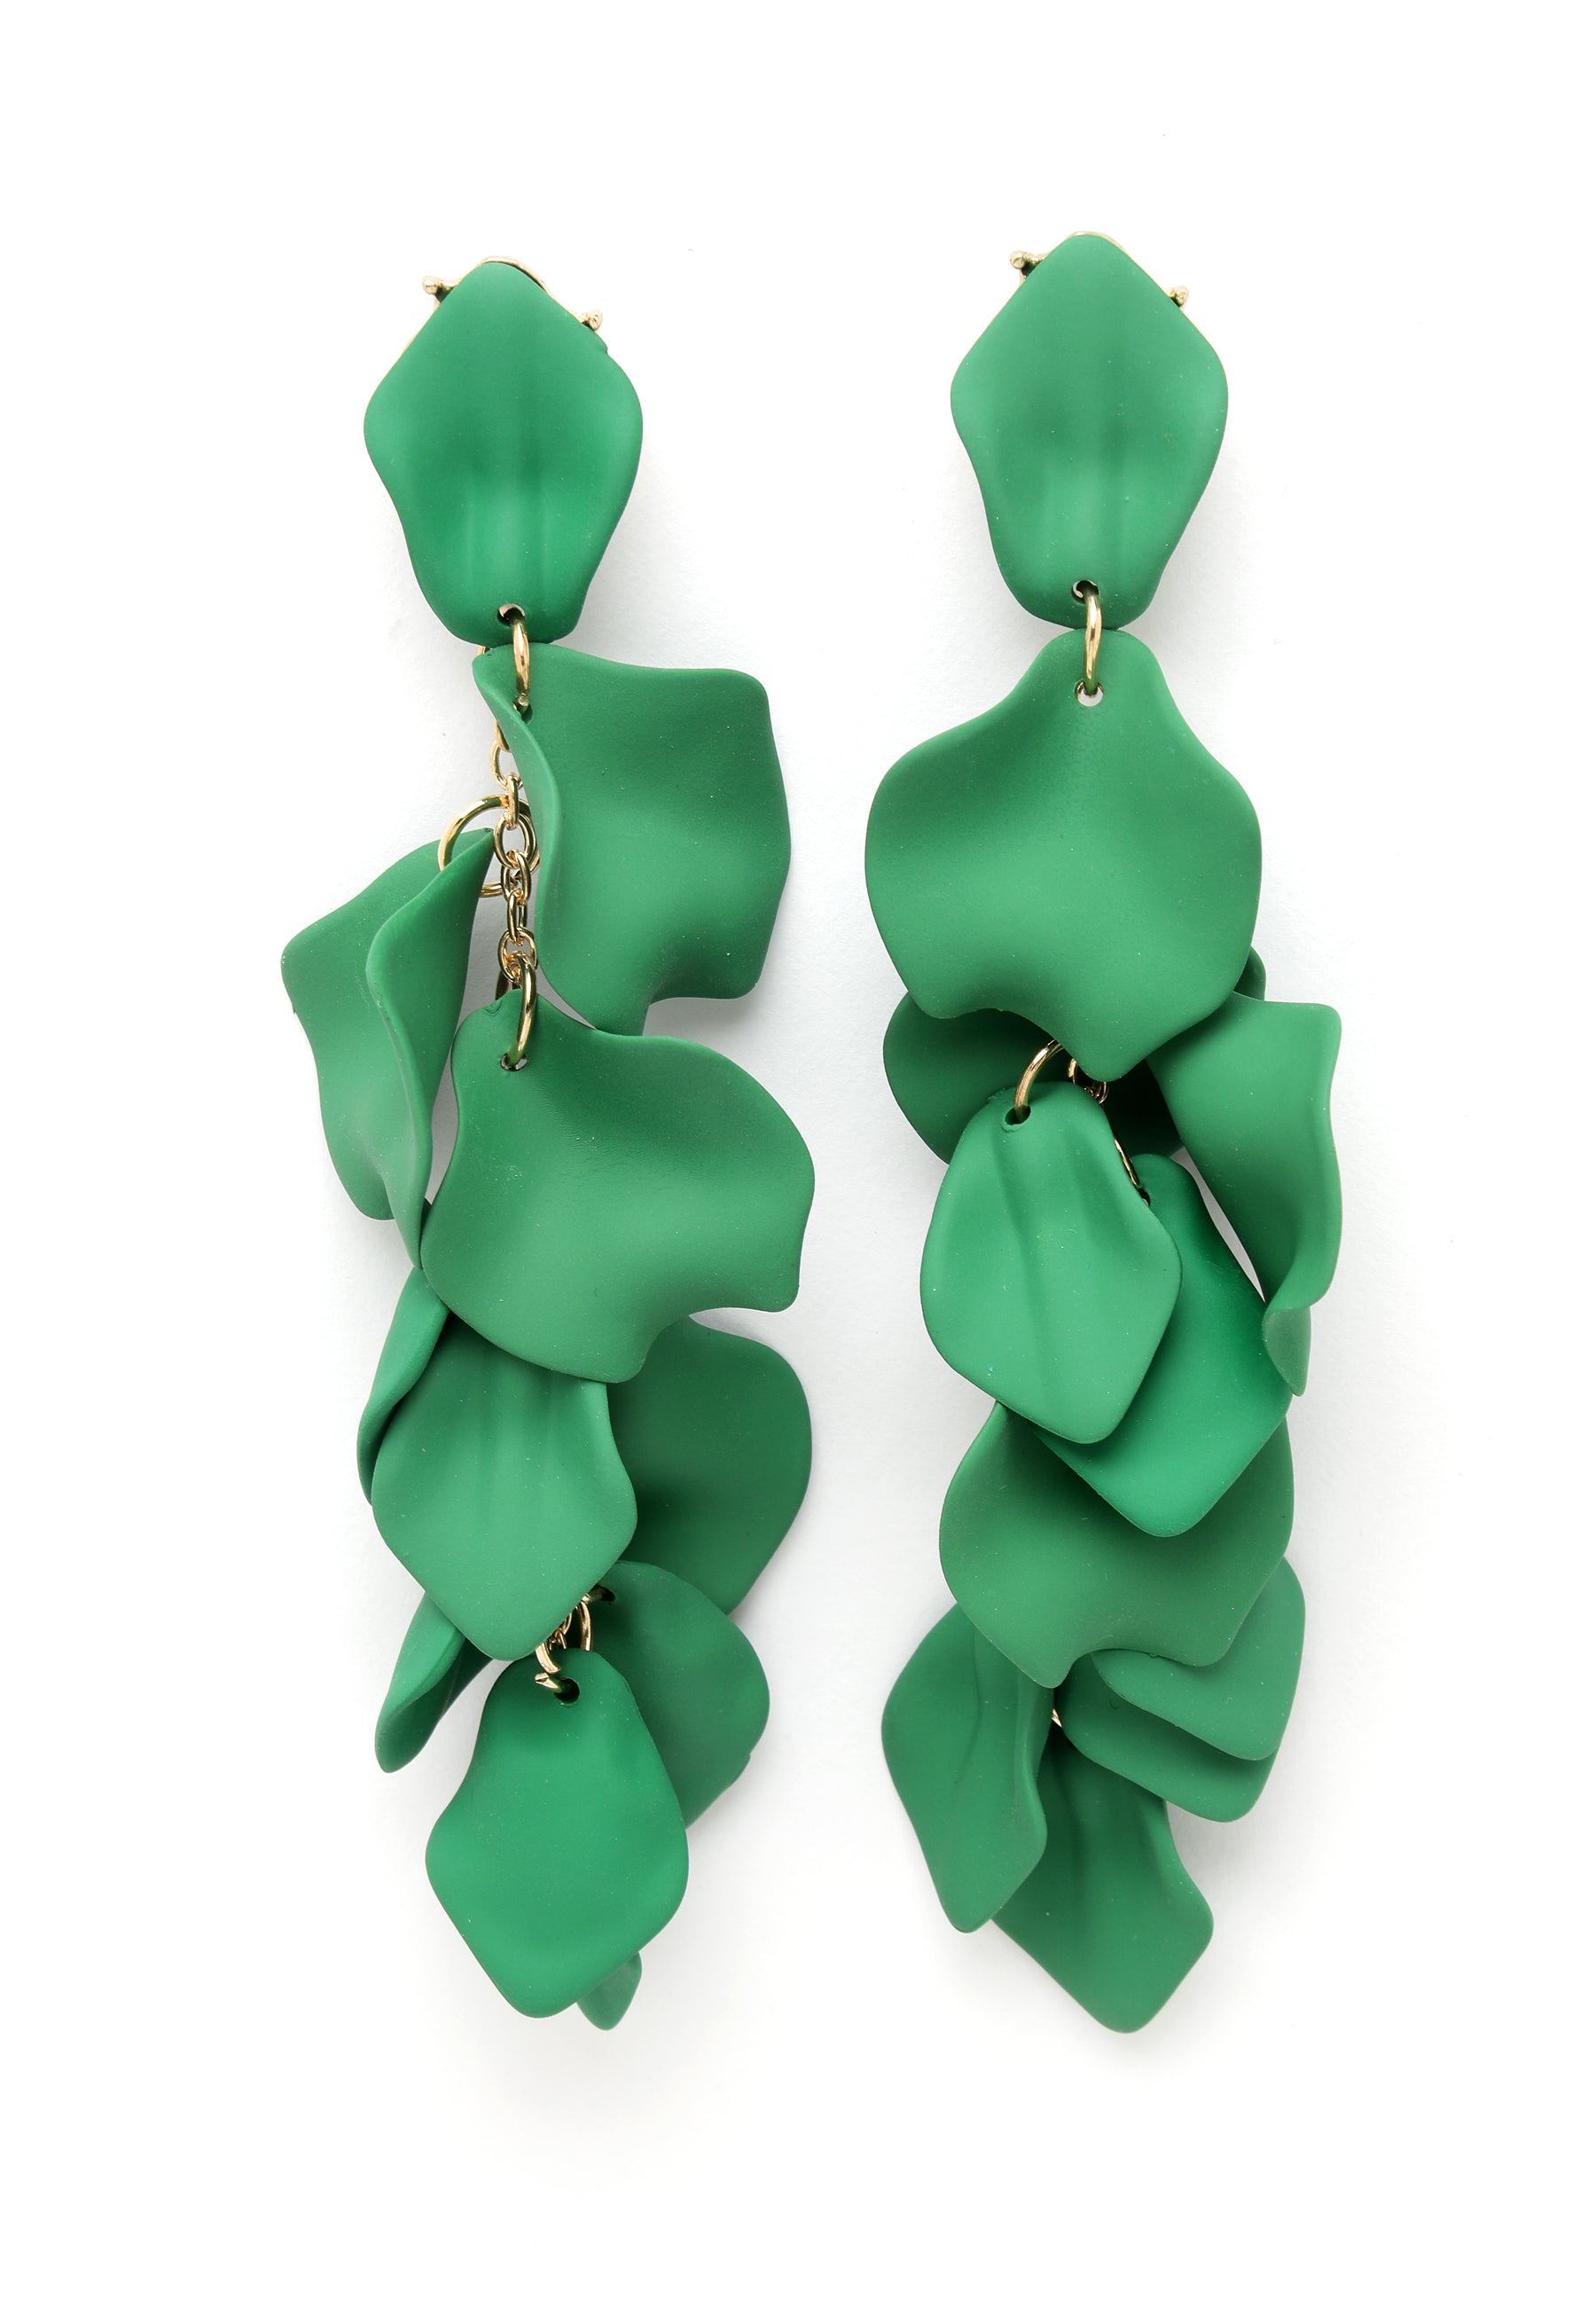 Boucles d'oreilles pendantes en forme de pétale de rose vert foncé.